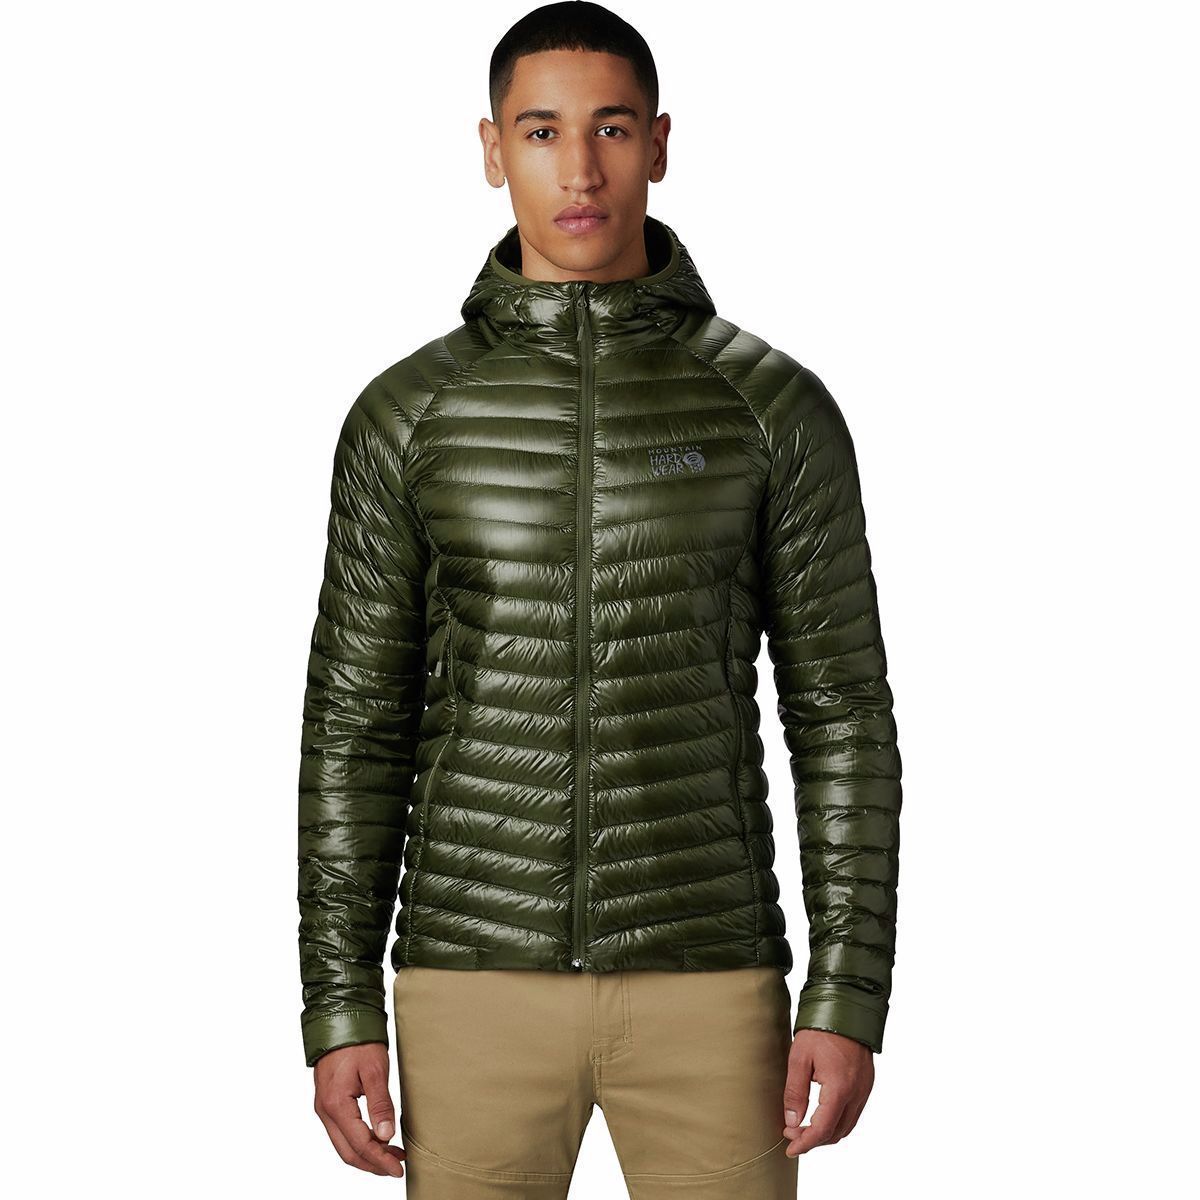 Mountain Hardwear - Men's Jackets, Coats, Parkas. Sustainable 